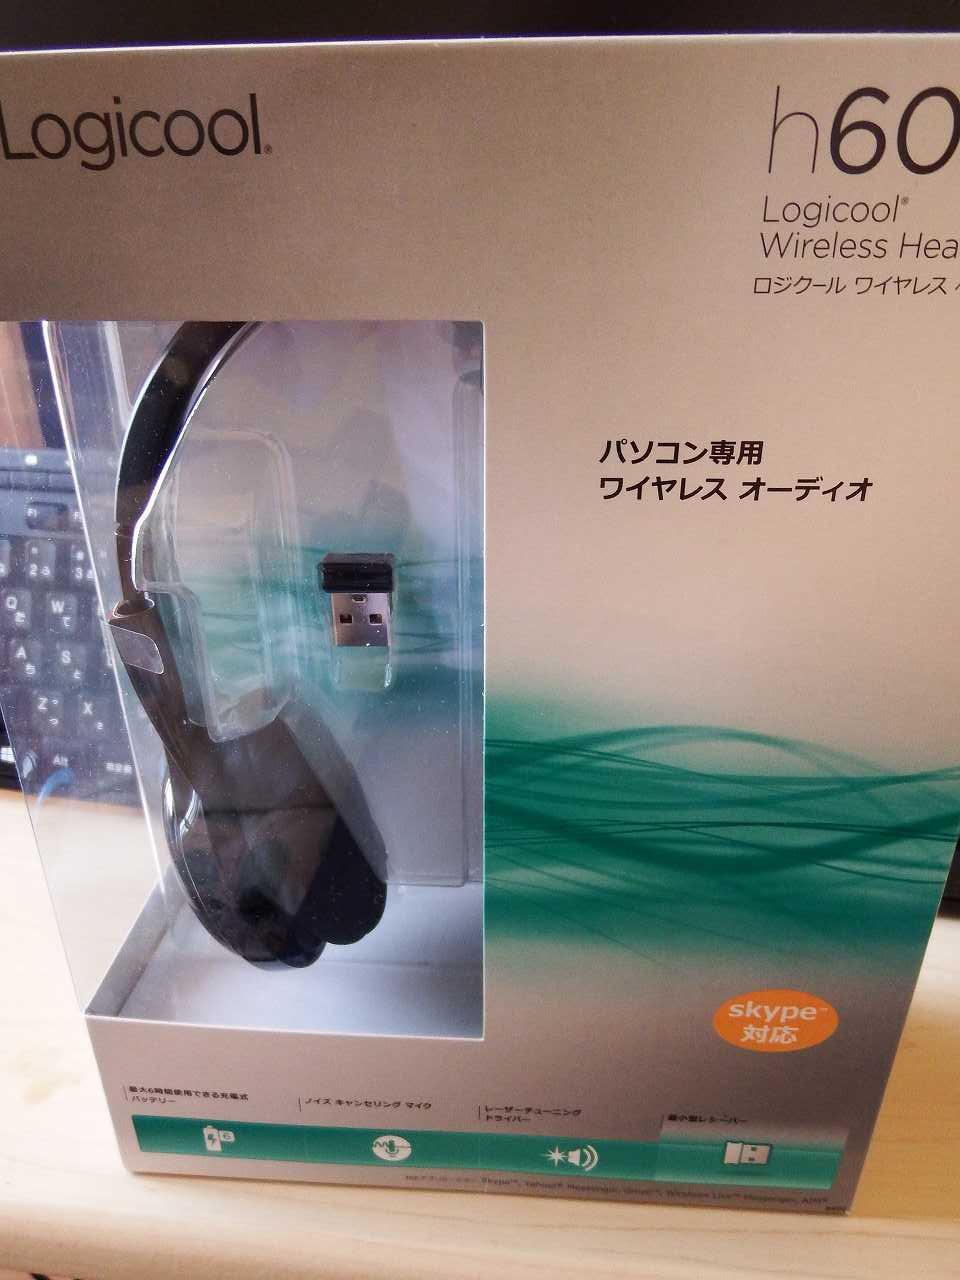 ワイヤレスヘッドフォンとしても十分使えます Logicool ワイヤレスヘッドセット H600のレビュー ジグソー レビューメディア